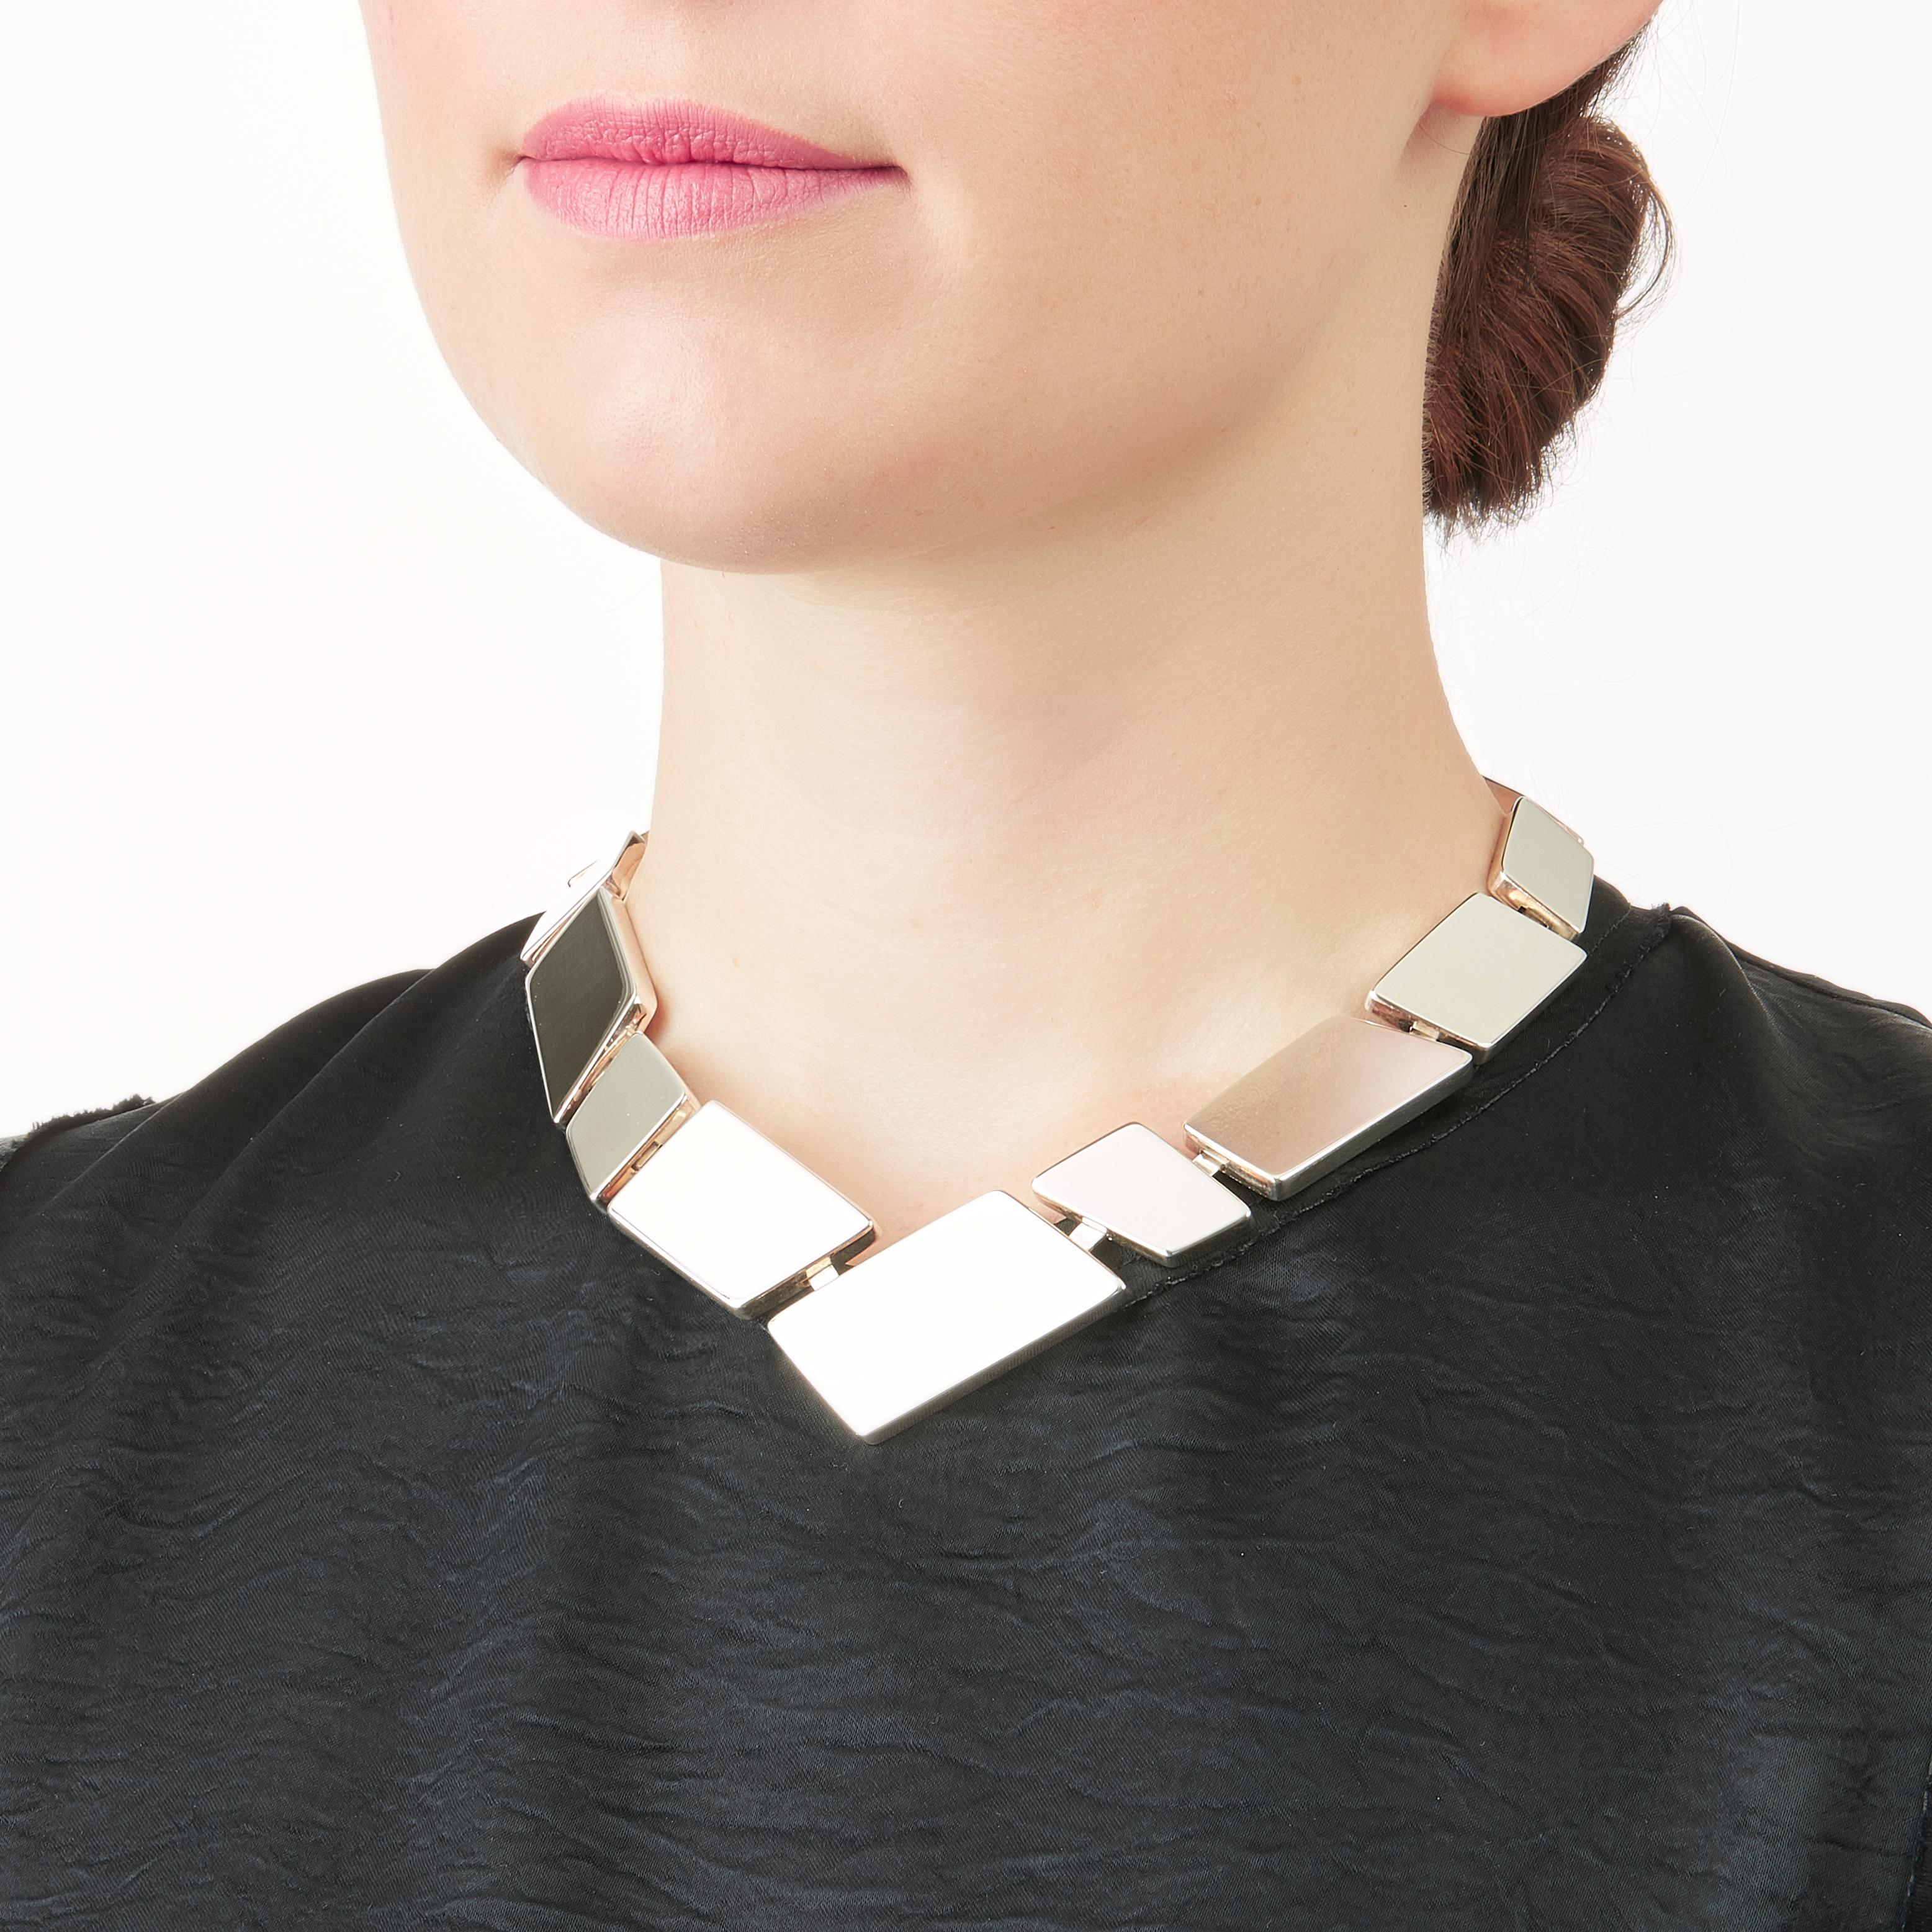 Die in limitierter Auflage im Mailänder Atelier von Nathalie Jean handgefertigte kleine Halskette Saphir Absolu besteht aus leichten, geometrischen Hohlkörpern mit abgerundeten Kanten und ist aus Sterlingsilber gefertigt. Dank raffinierter,